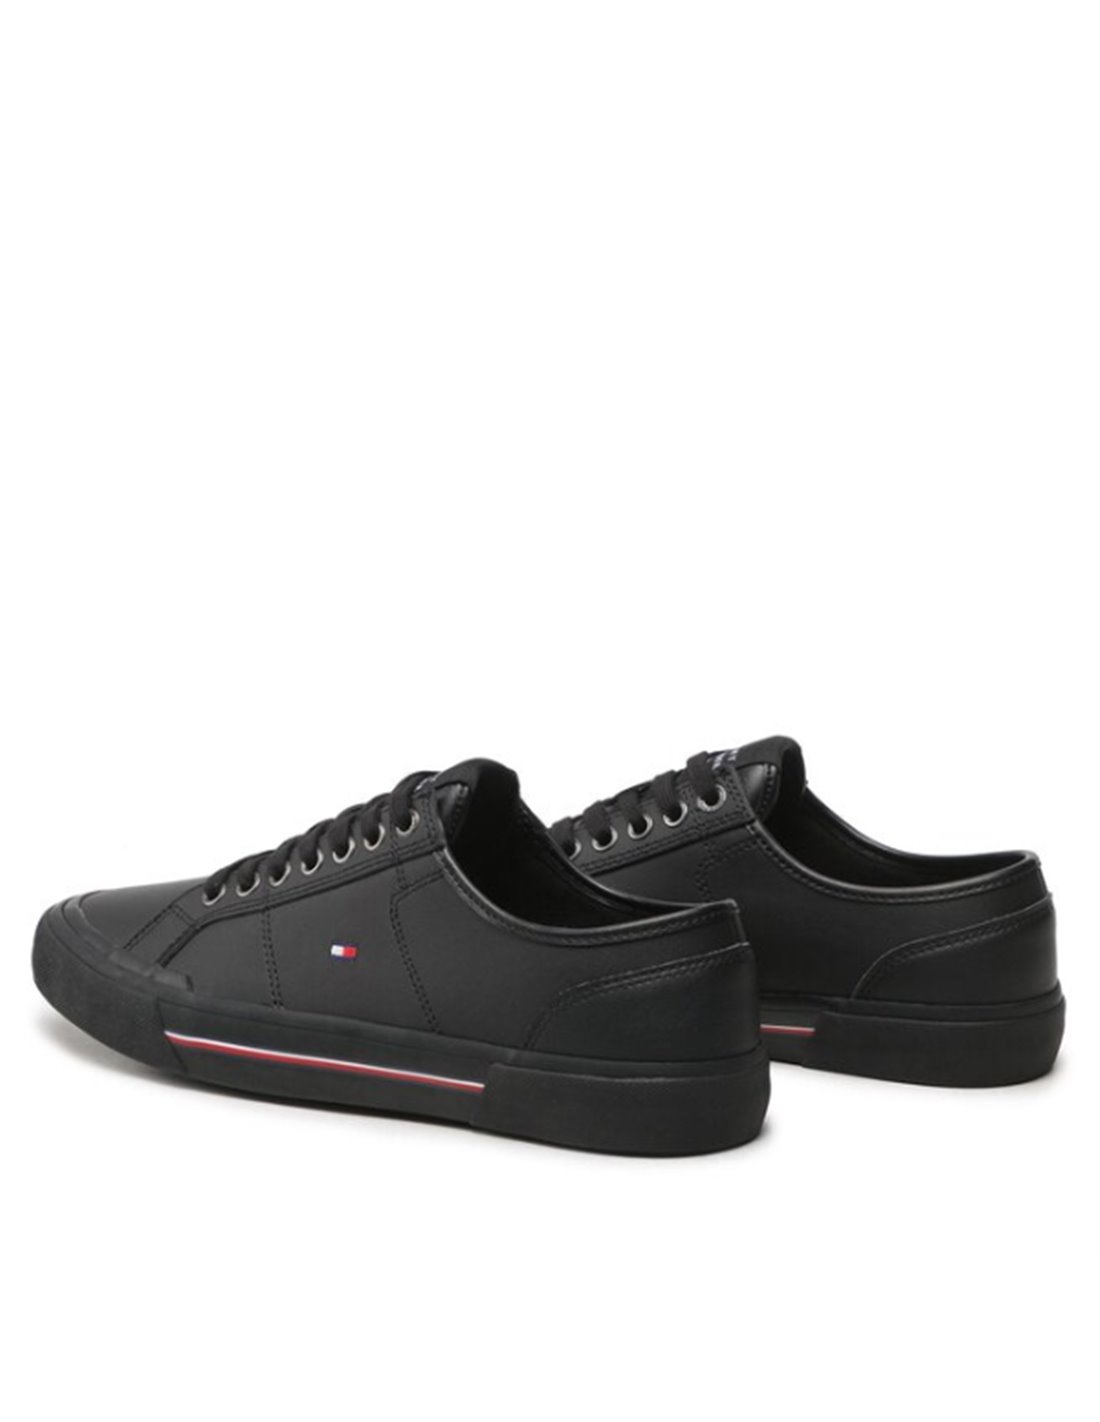 Tommy Hilfiger Chaqueta Core Packable marino - Tienda Esdemarca calzado,  moda y complementos - zapatos de marca y zapatillas de marca